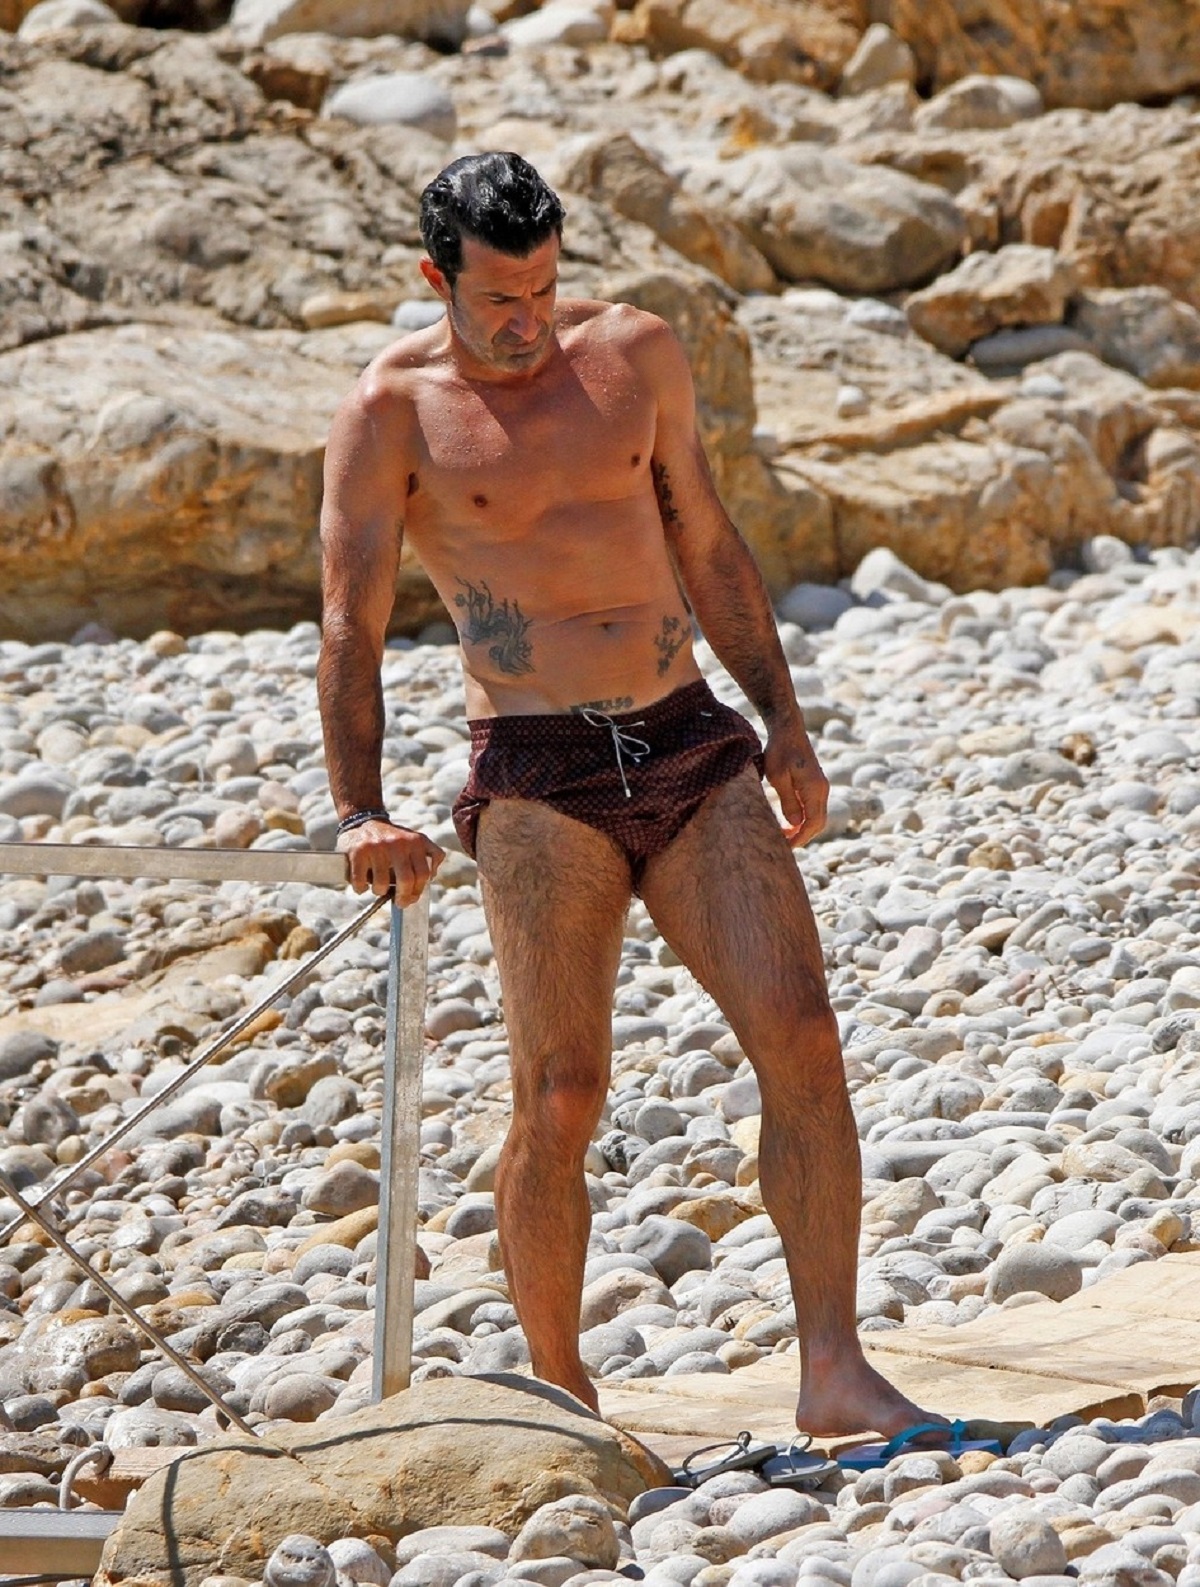 Luis Figo a mers în vacanță în Ibiza și a fost pozat la bustul gol